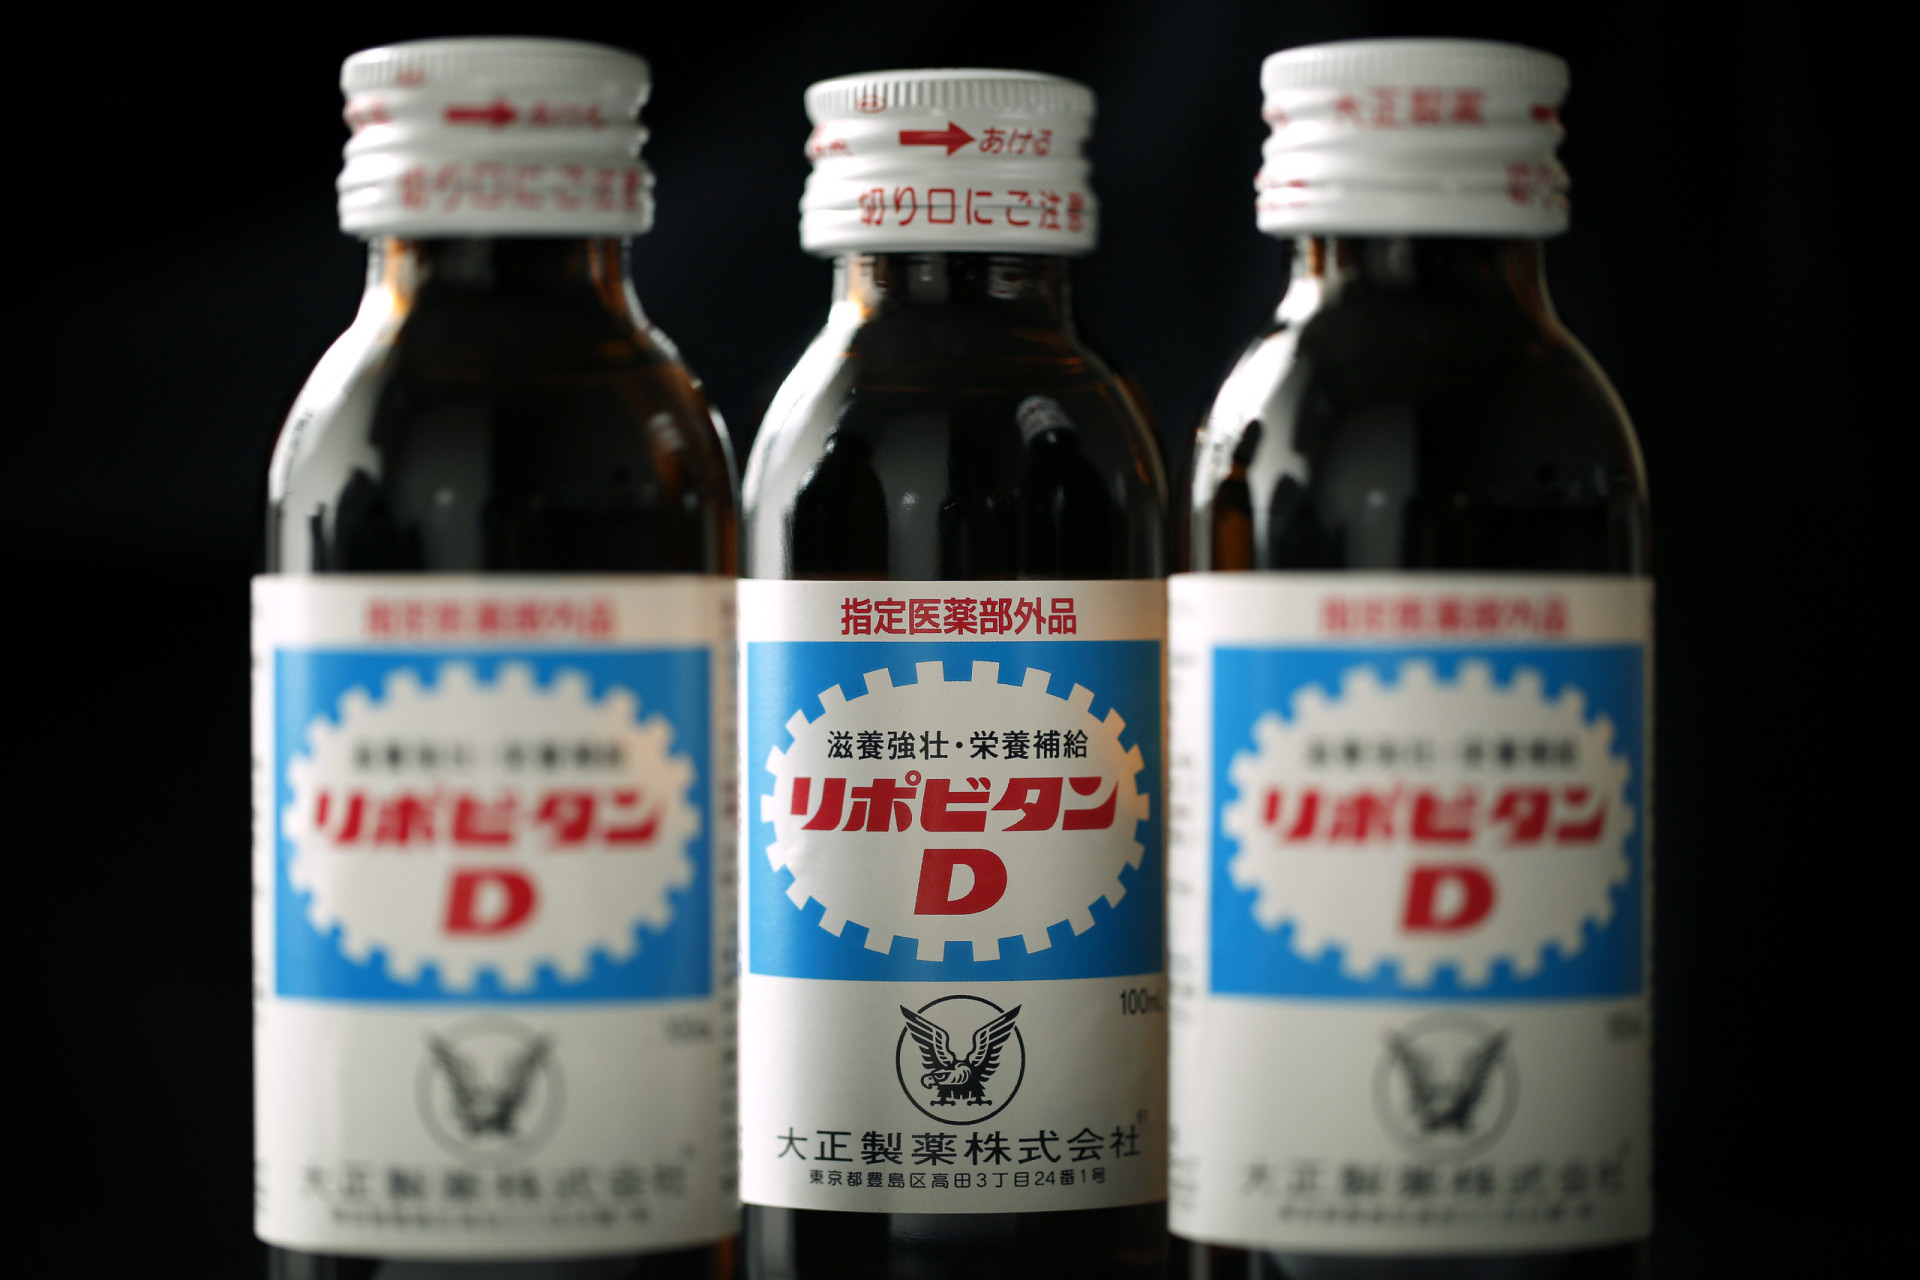 <p>Les boissons énergétiques et toniques conditionnées dans de petites bouteilles ressemblant à des médicaments sont courantes au Japon. La photo montre un produit populaire appelé Lipovitan D.</p><p>Tu pourrais aussi aimer:<a href="https://www.starsinsider.com/n/388002?utm_source=msn.com&utm_medium=display&utm_campaign=referral_description&utm_content=556788"> En Thaïlande, explorez "l'île de la mort"</a></p>